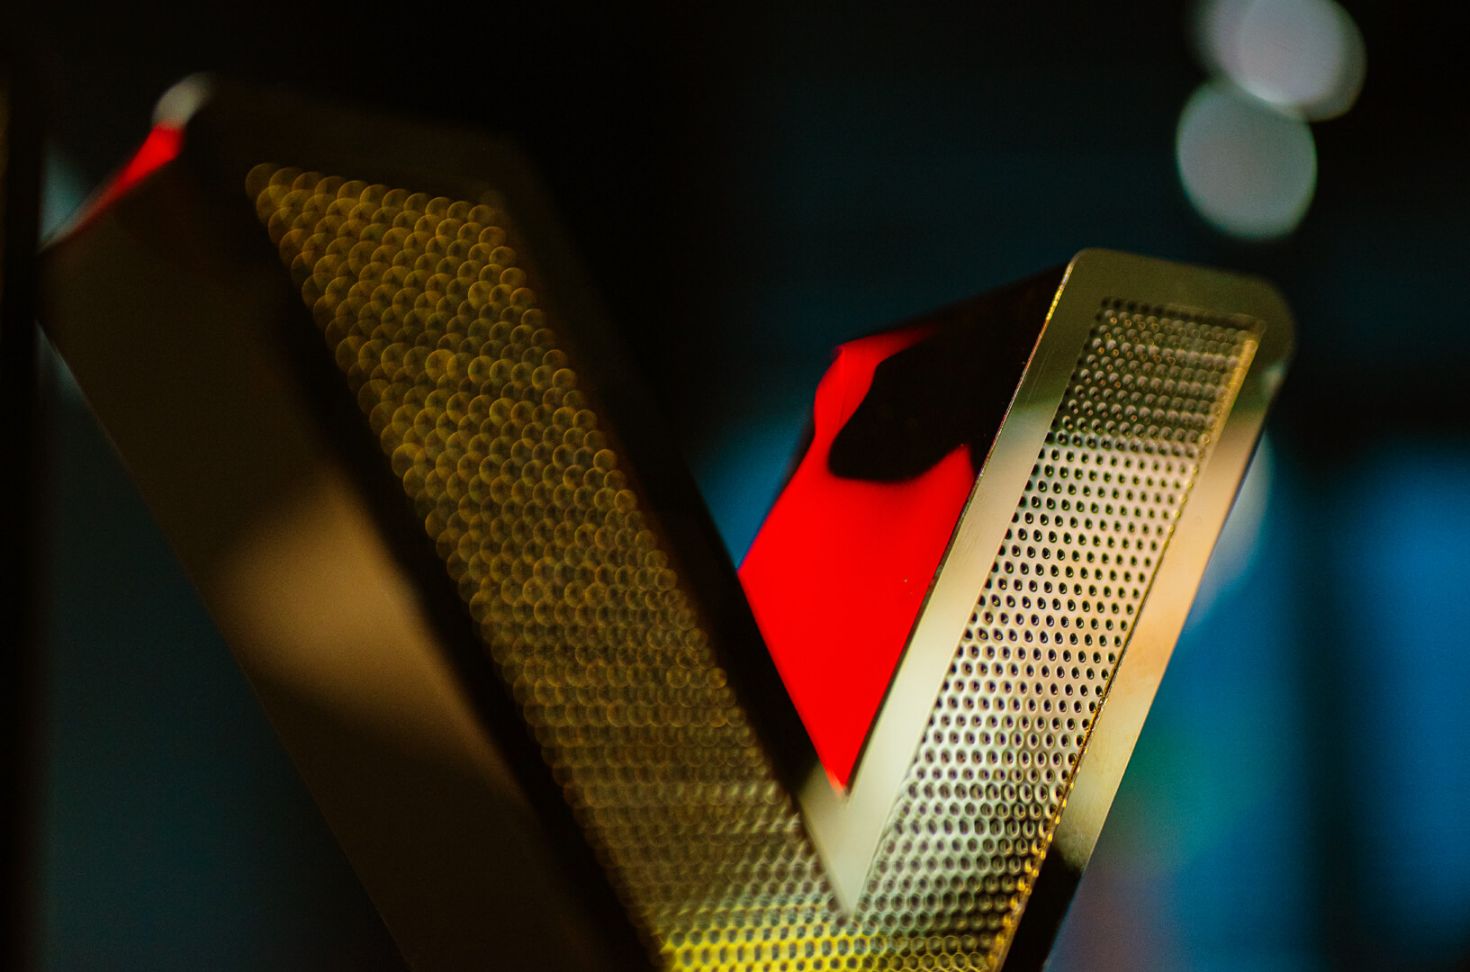 Blacha perforowana złota - Litera z blachy złotej perforowanej, podświetlana LED.